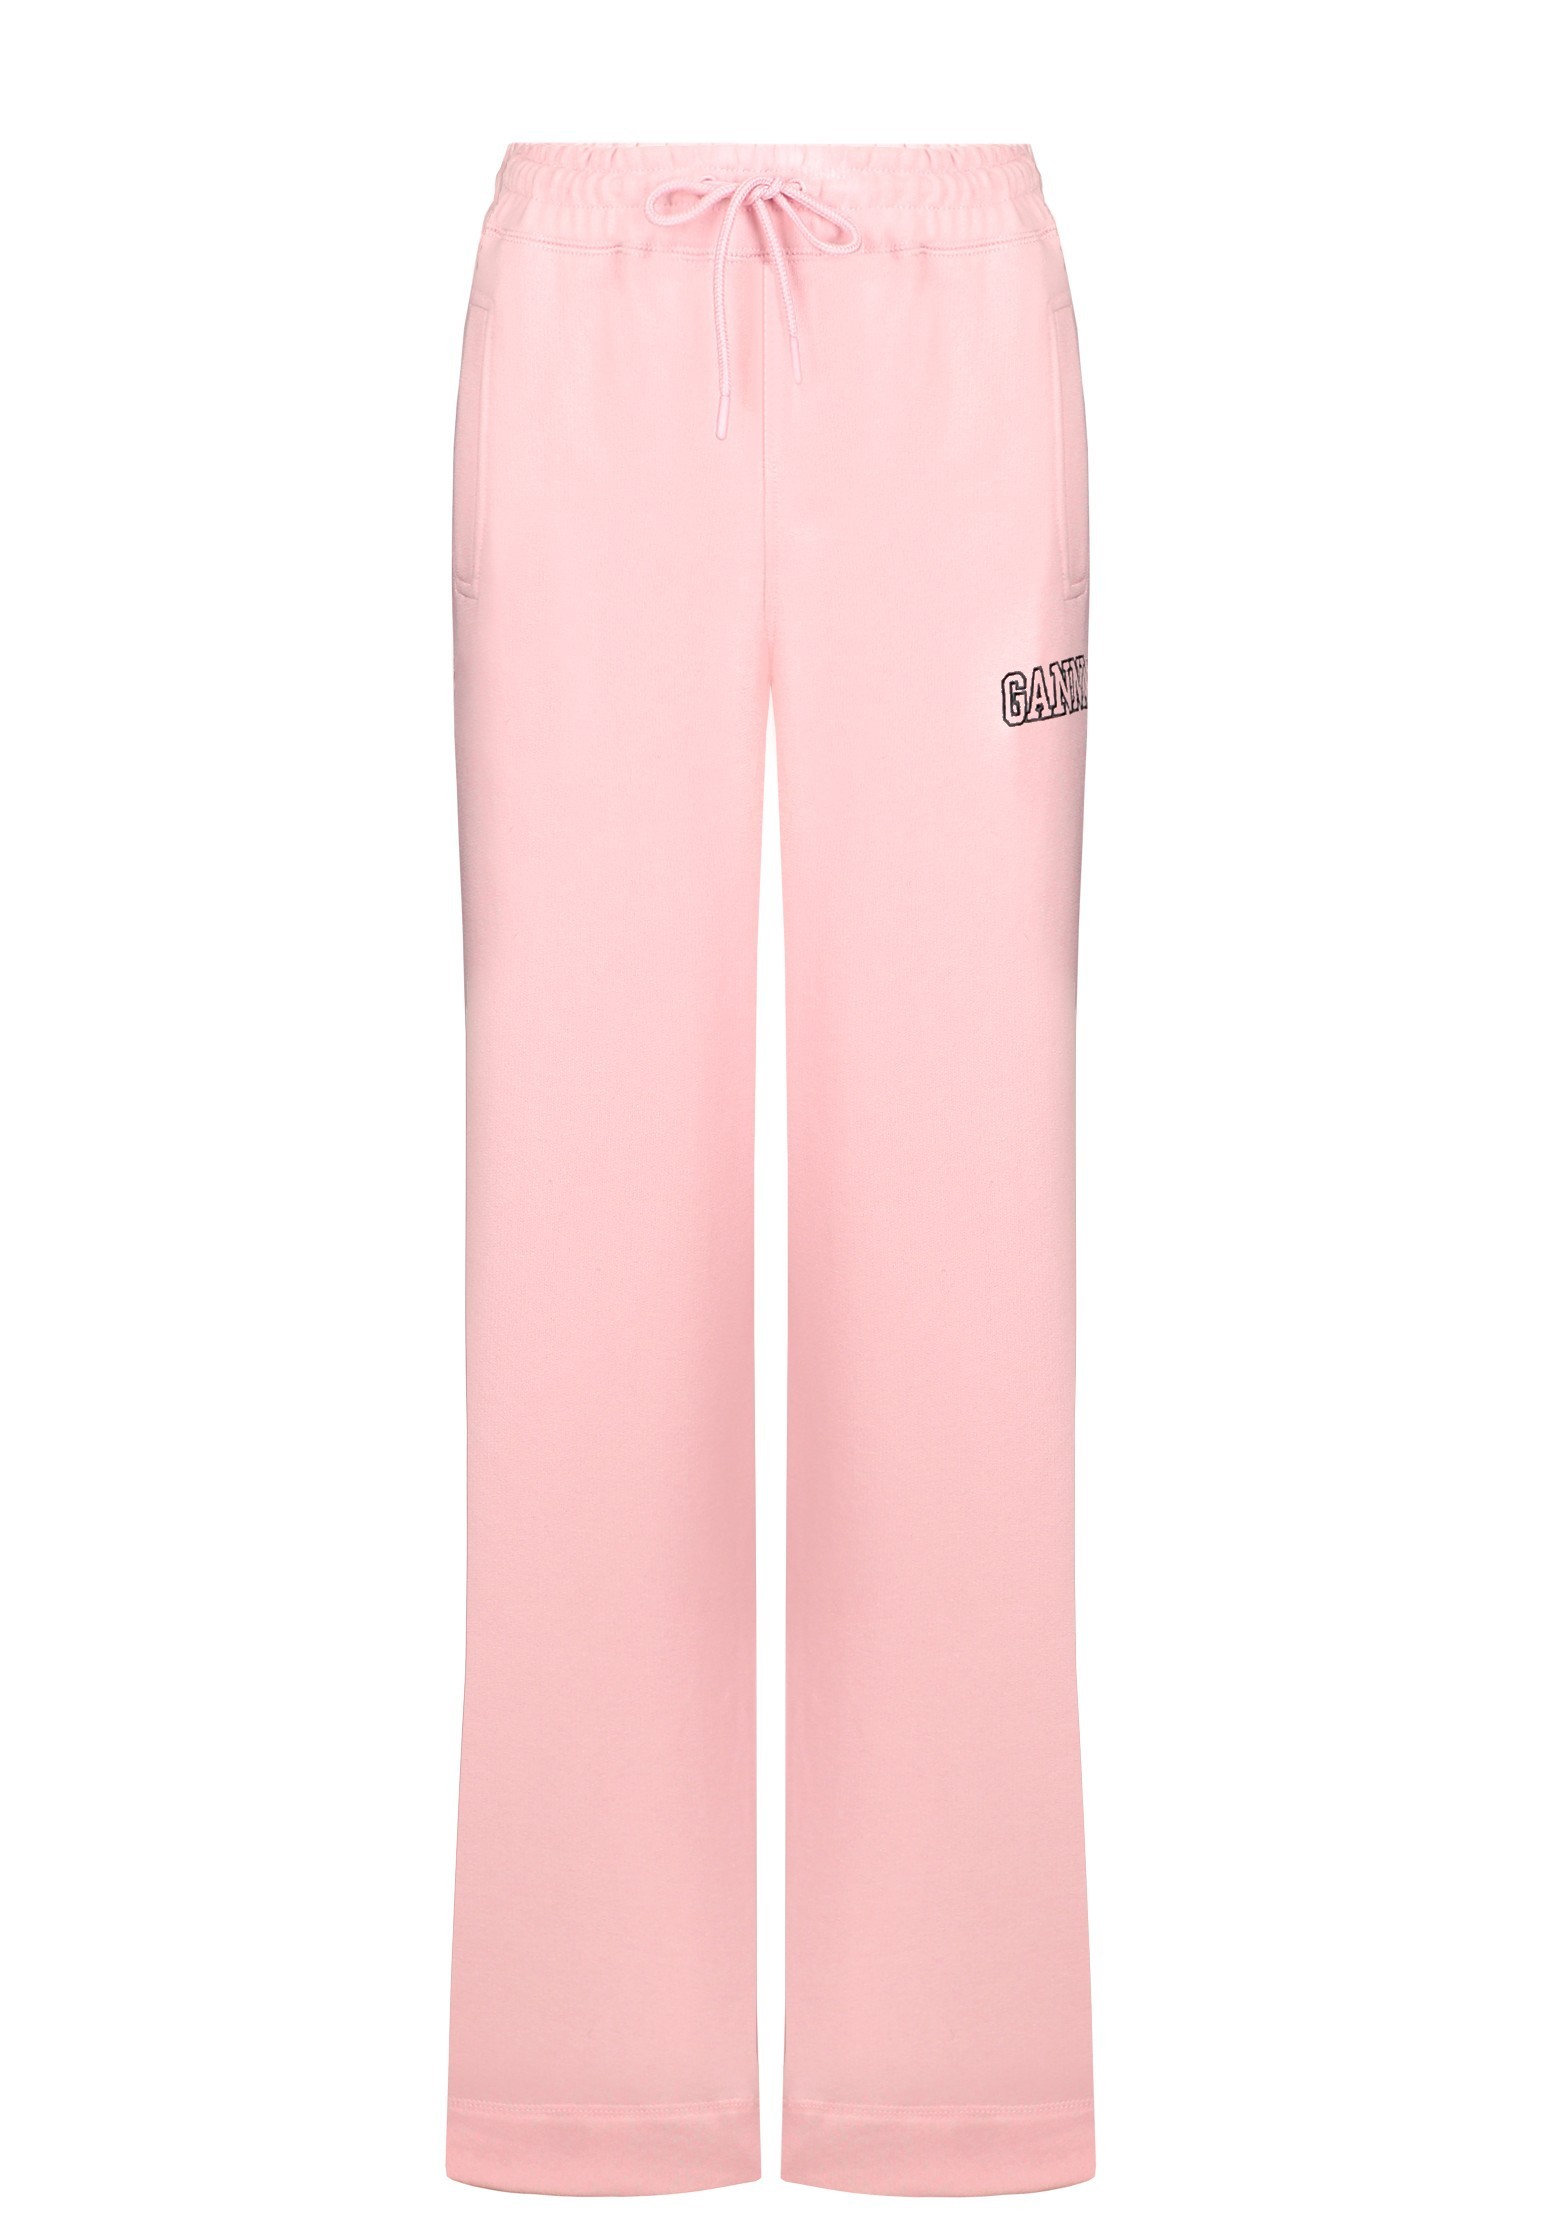 Спортивные брюки женские GANNI 134753 розовые S